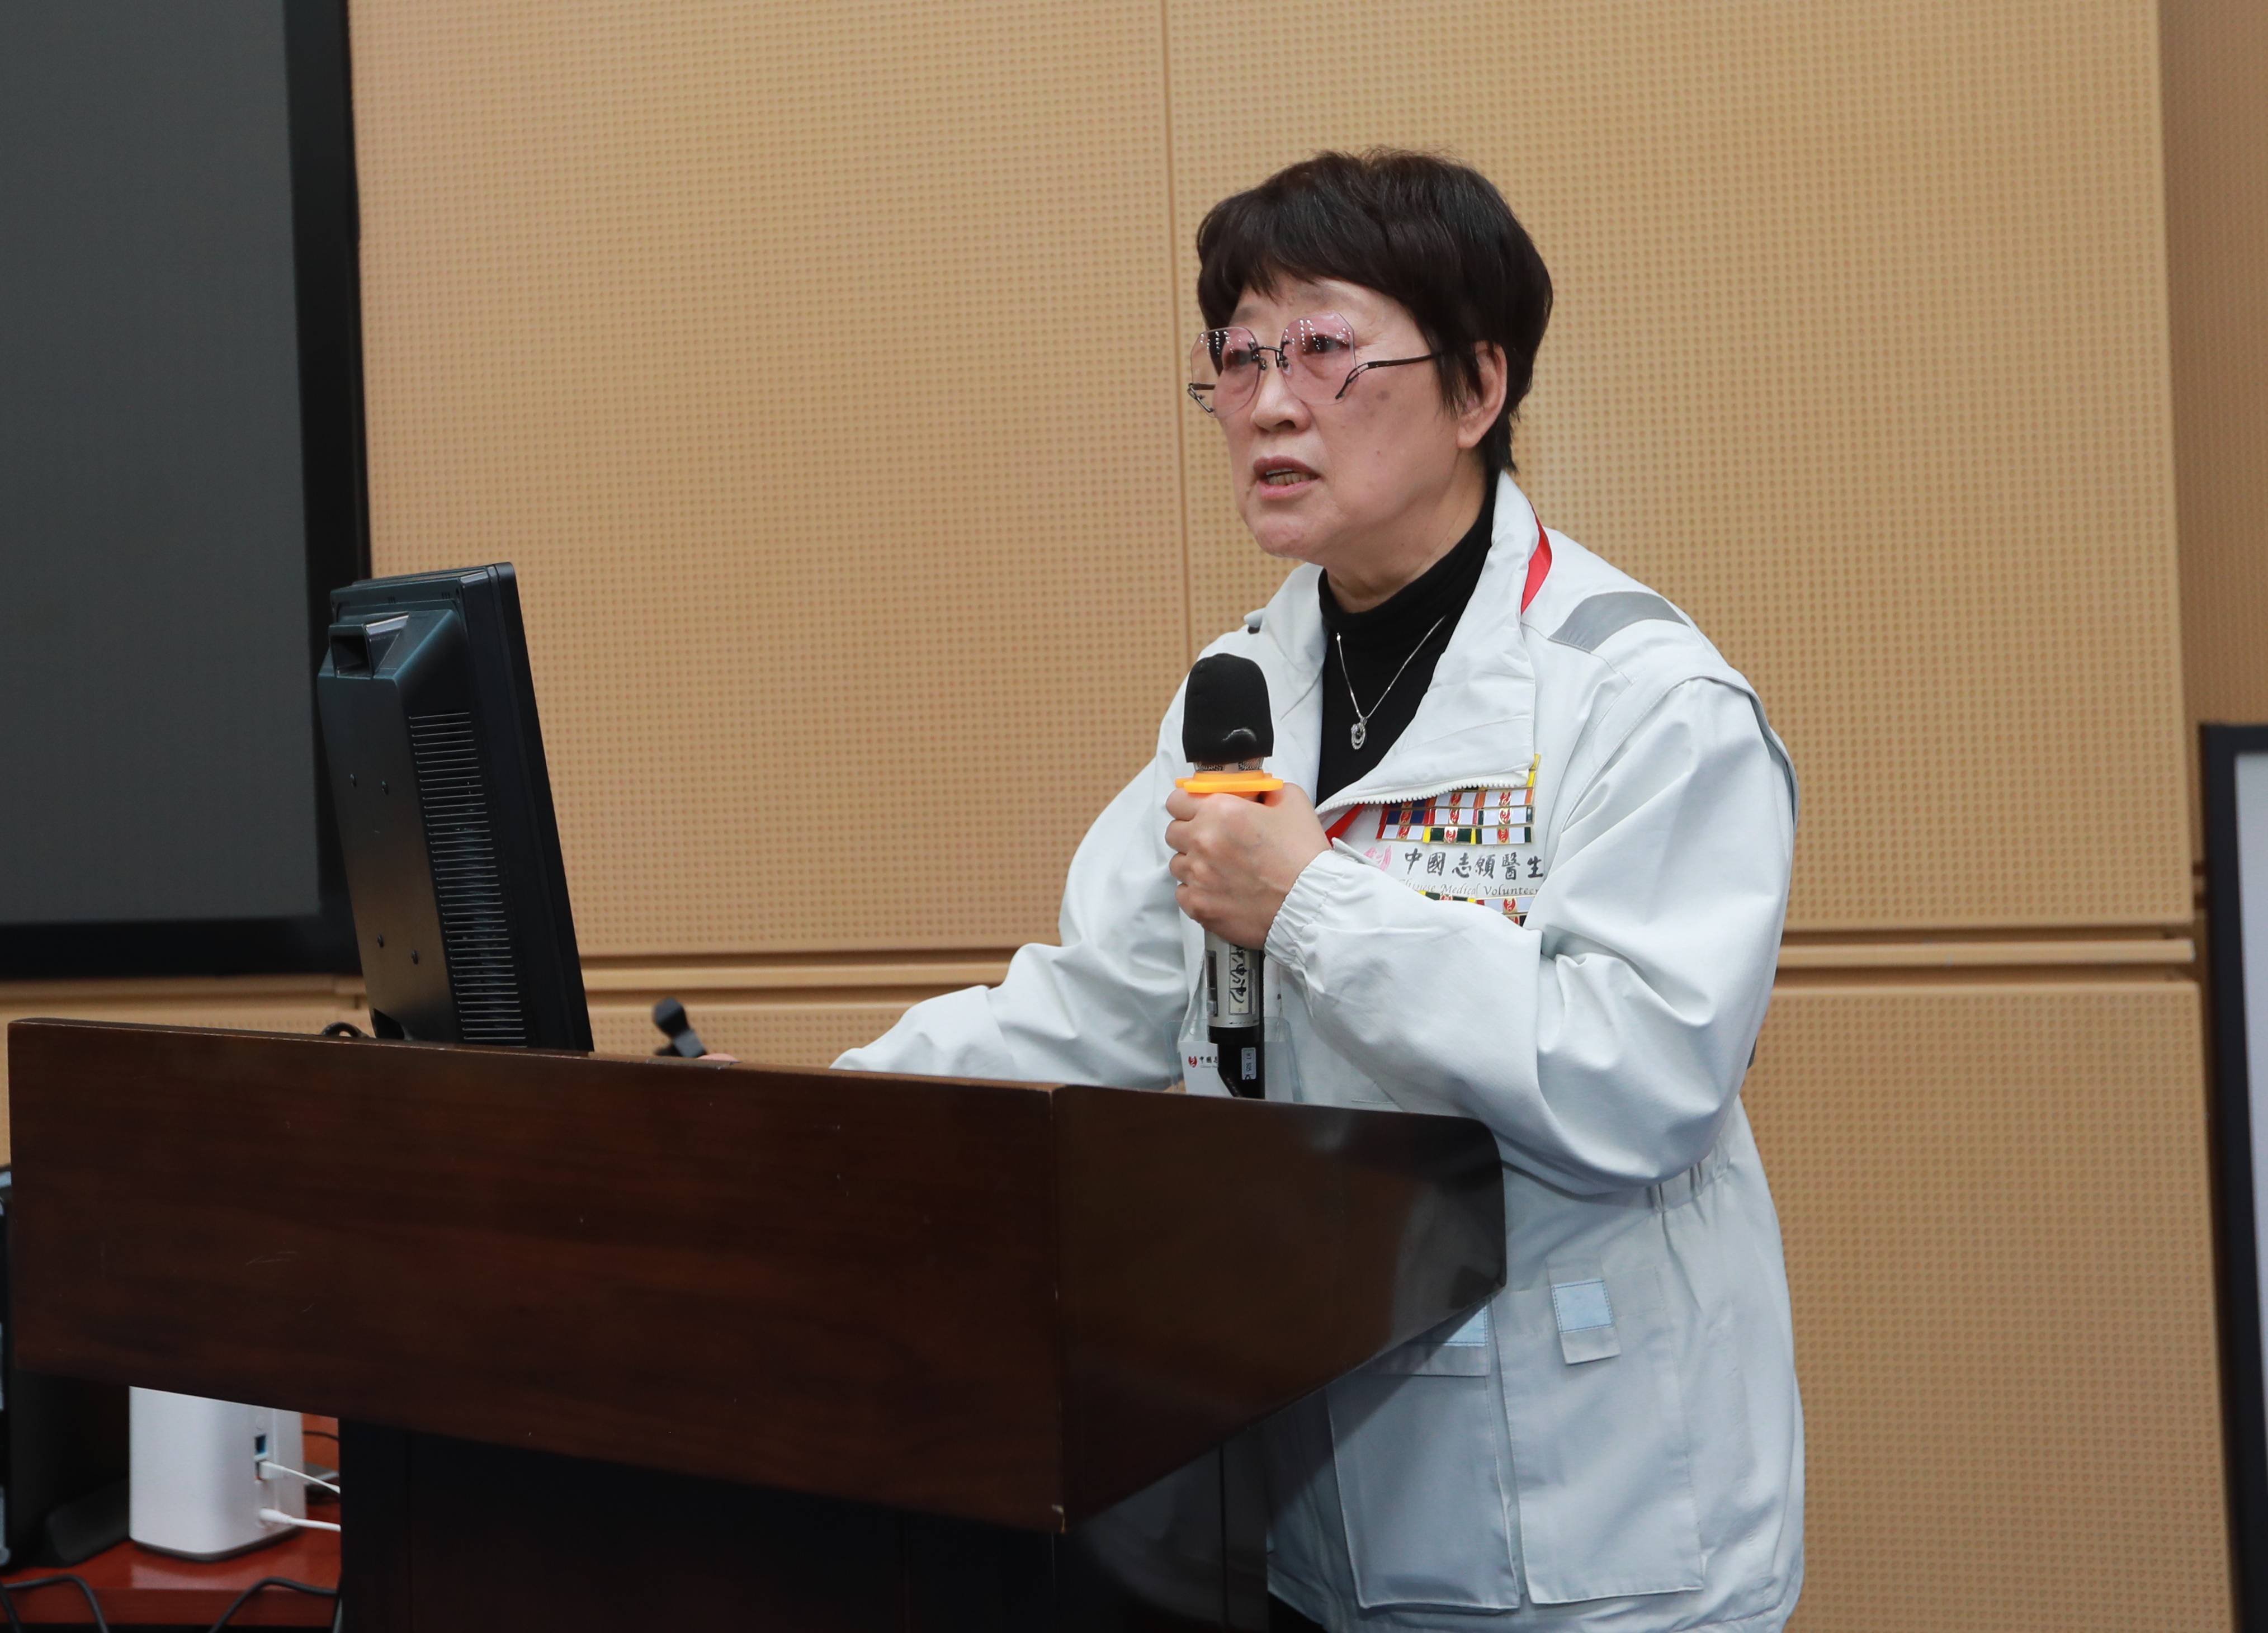 凌峰教授中国志愿医生已设立192个专家工作站完成2万多次义诊